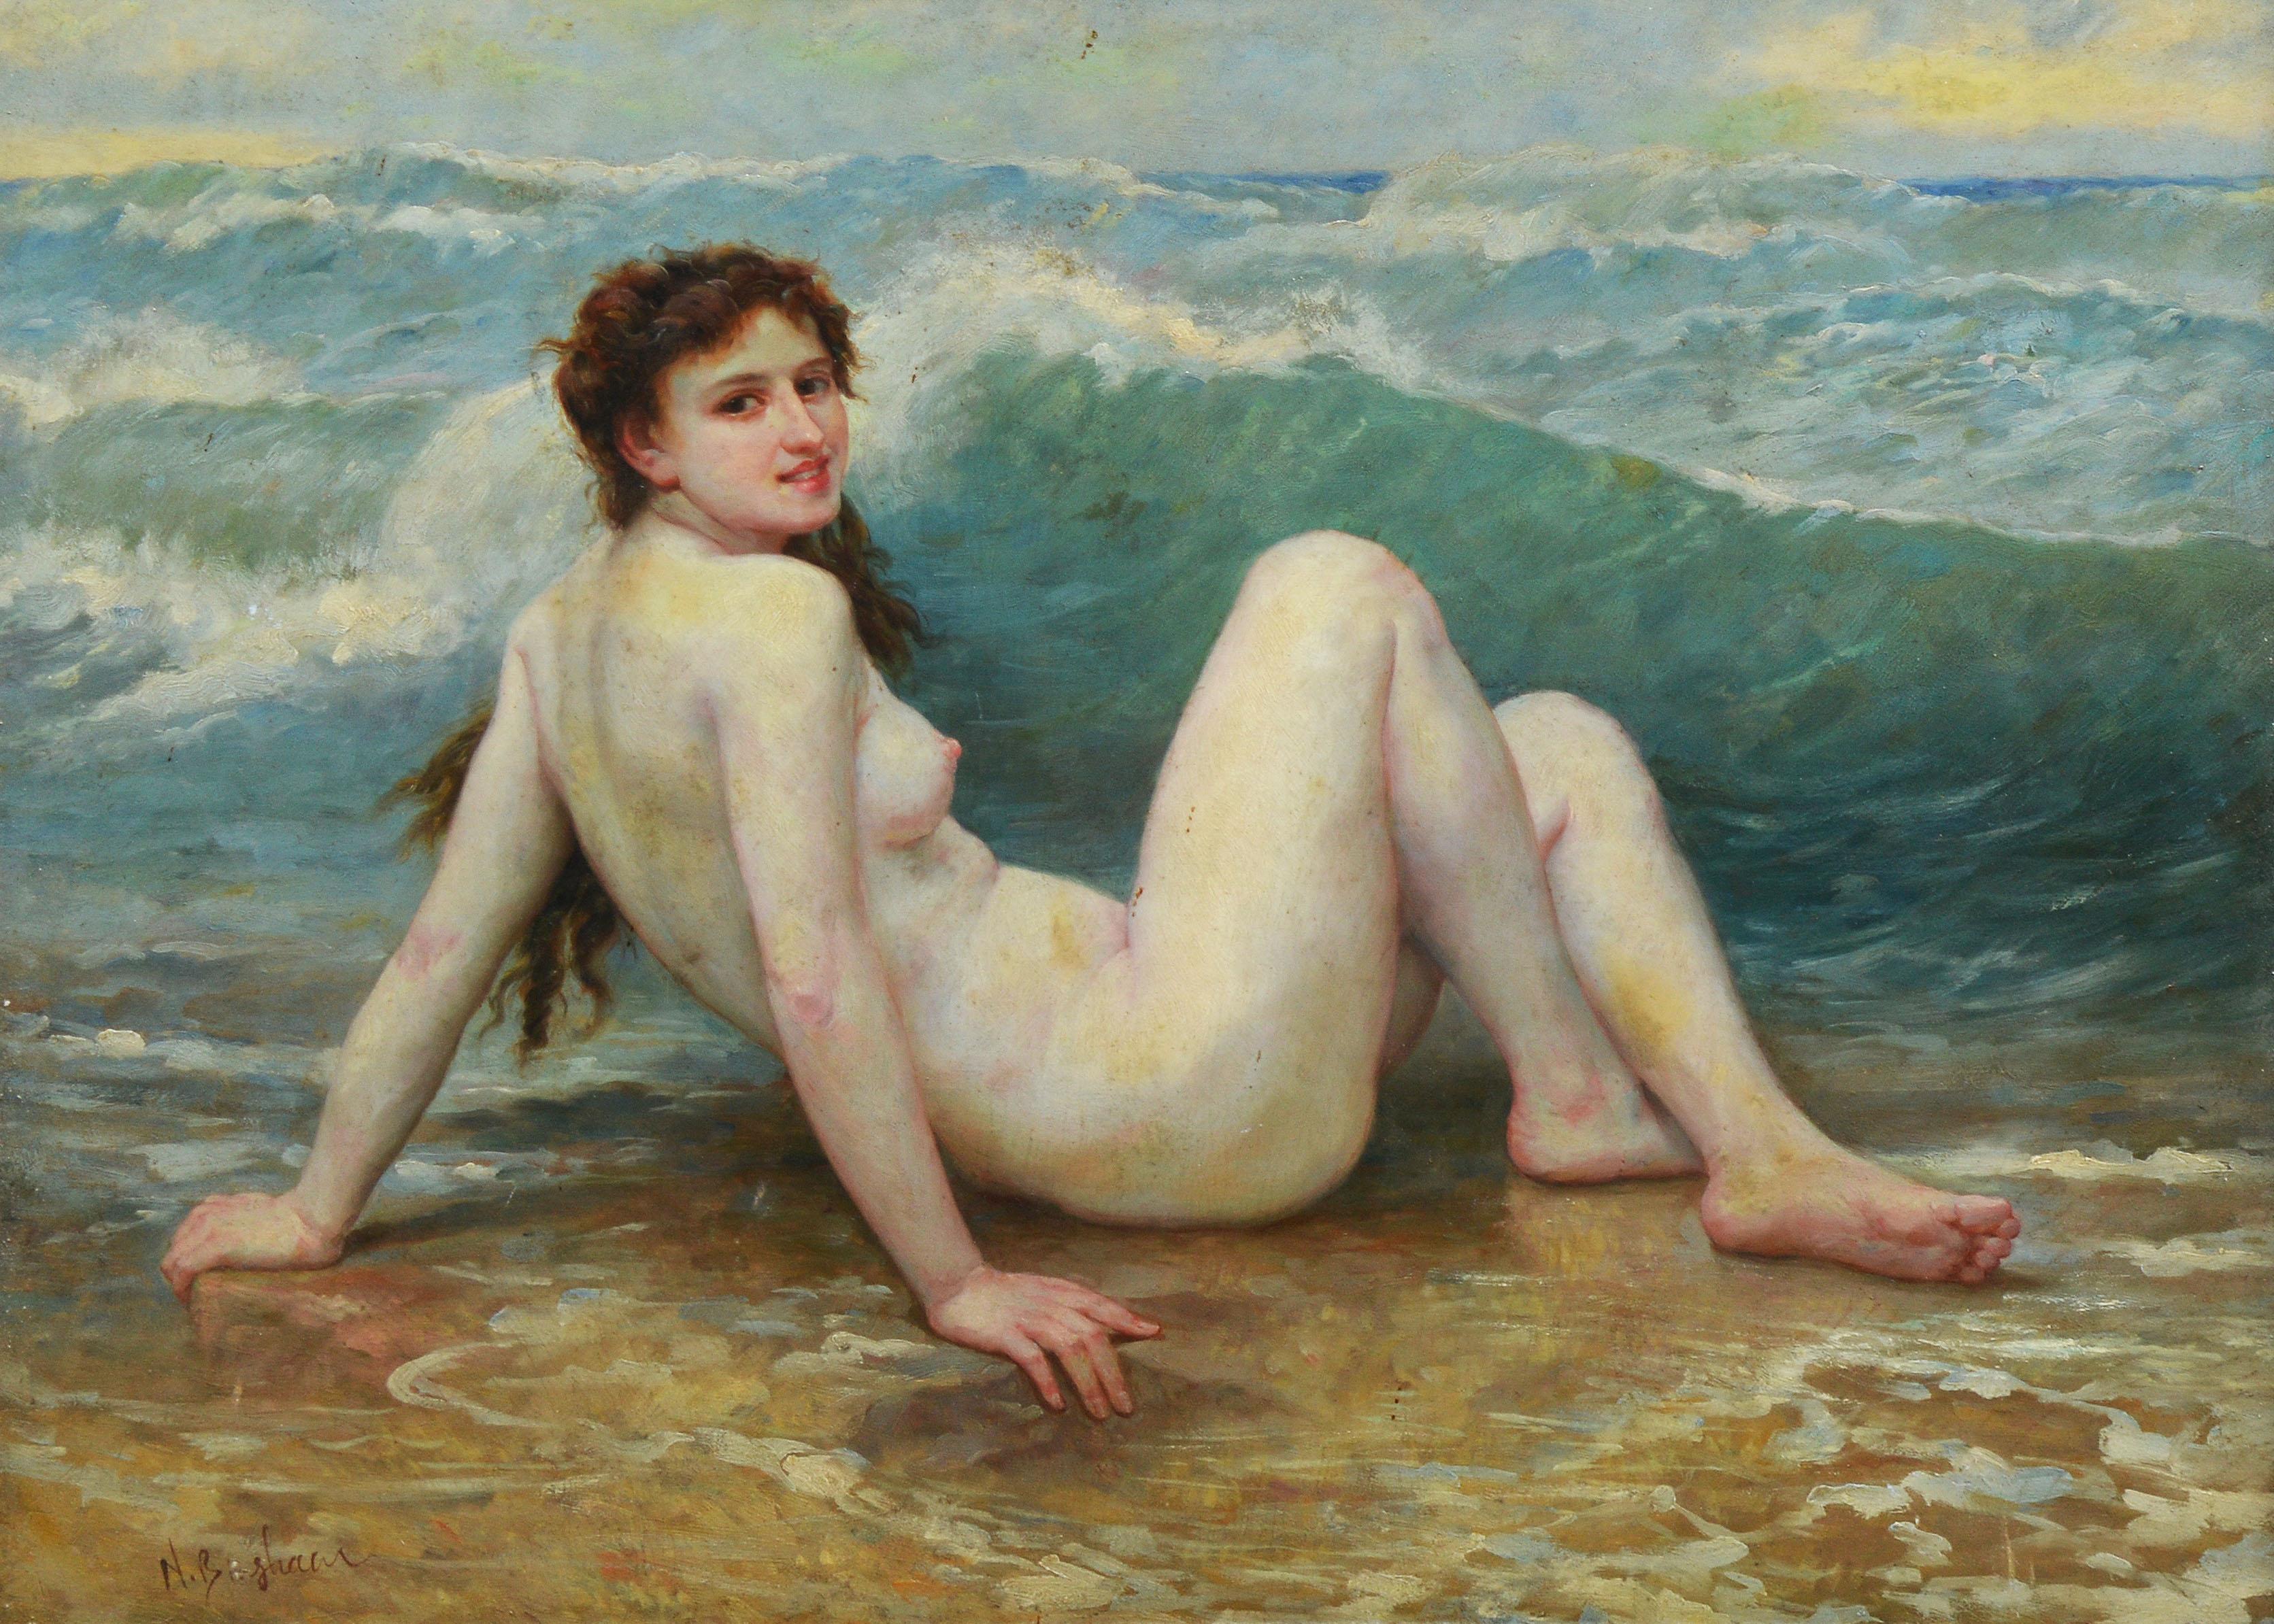 nude beach painting